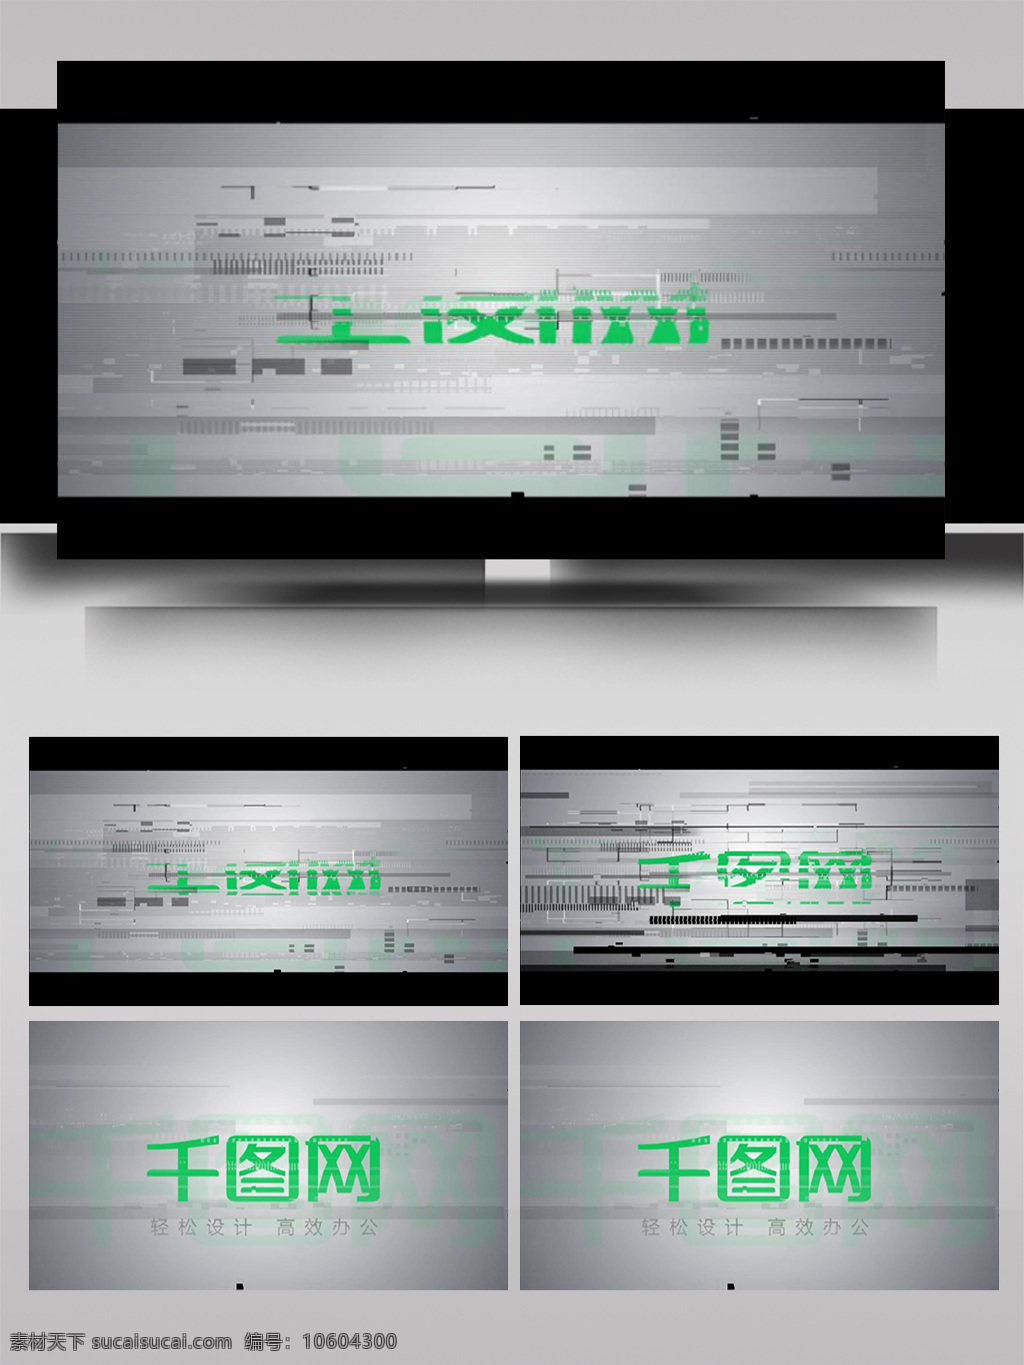 电子 信号 斑驳 变换 展示 标题 ae 模板 立体 旋转 光影 动态 3d标志 杂色 故障 散开 组合 电视屏幕 晃动 噪点 片头